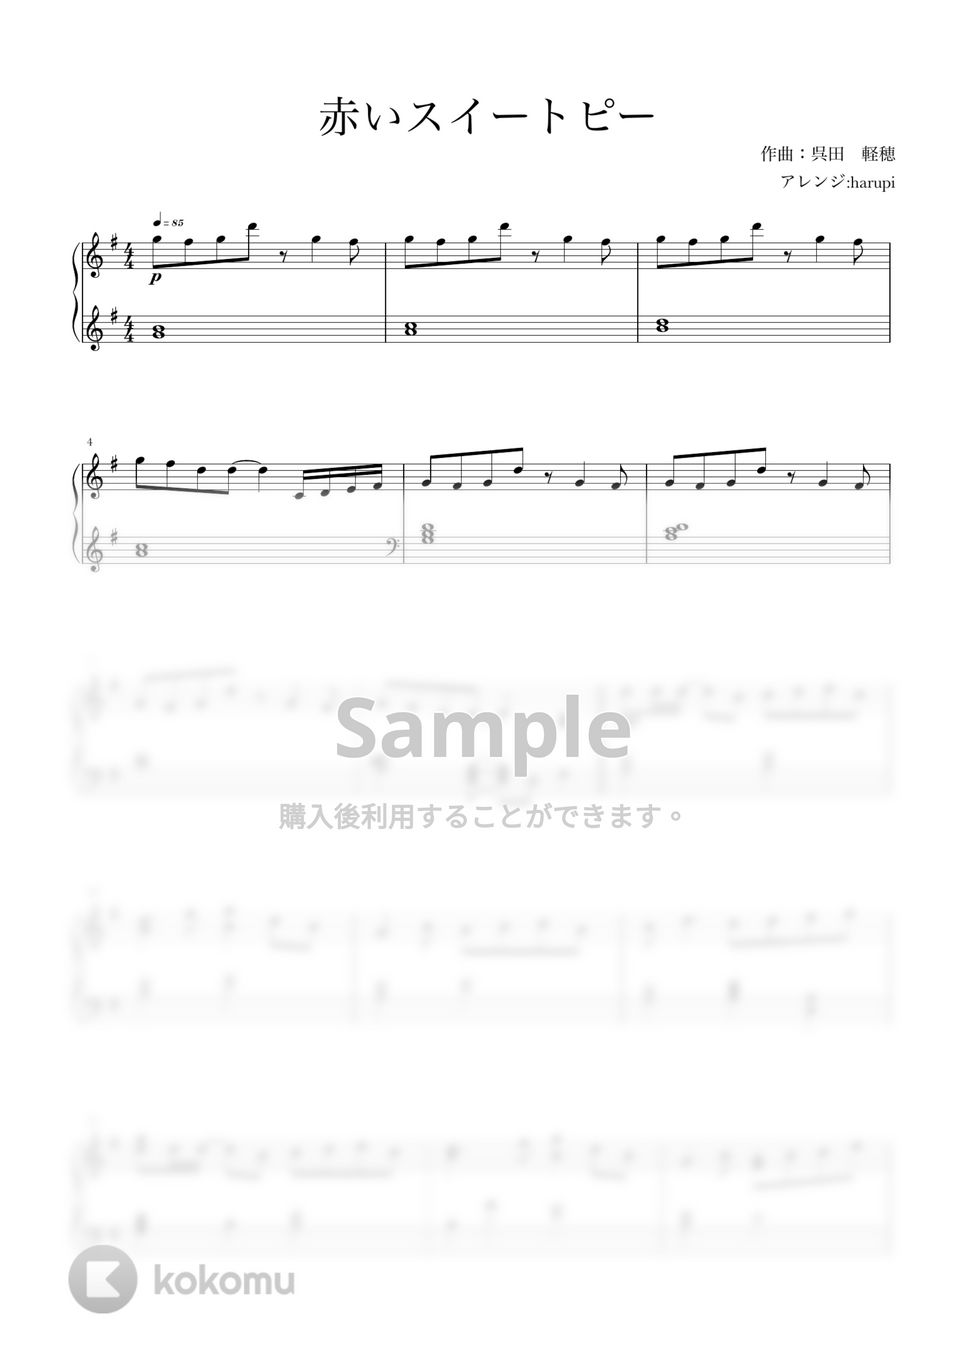 松田聖子 - 赤いスイートピー (ピアノソロ,松田聖子,懐メロ) by harupi